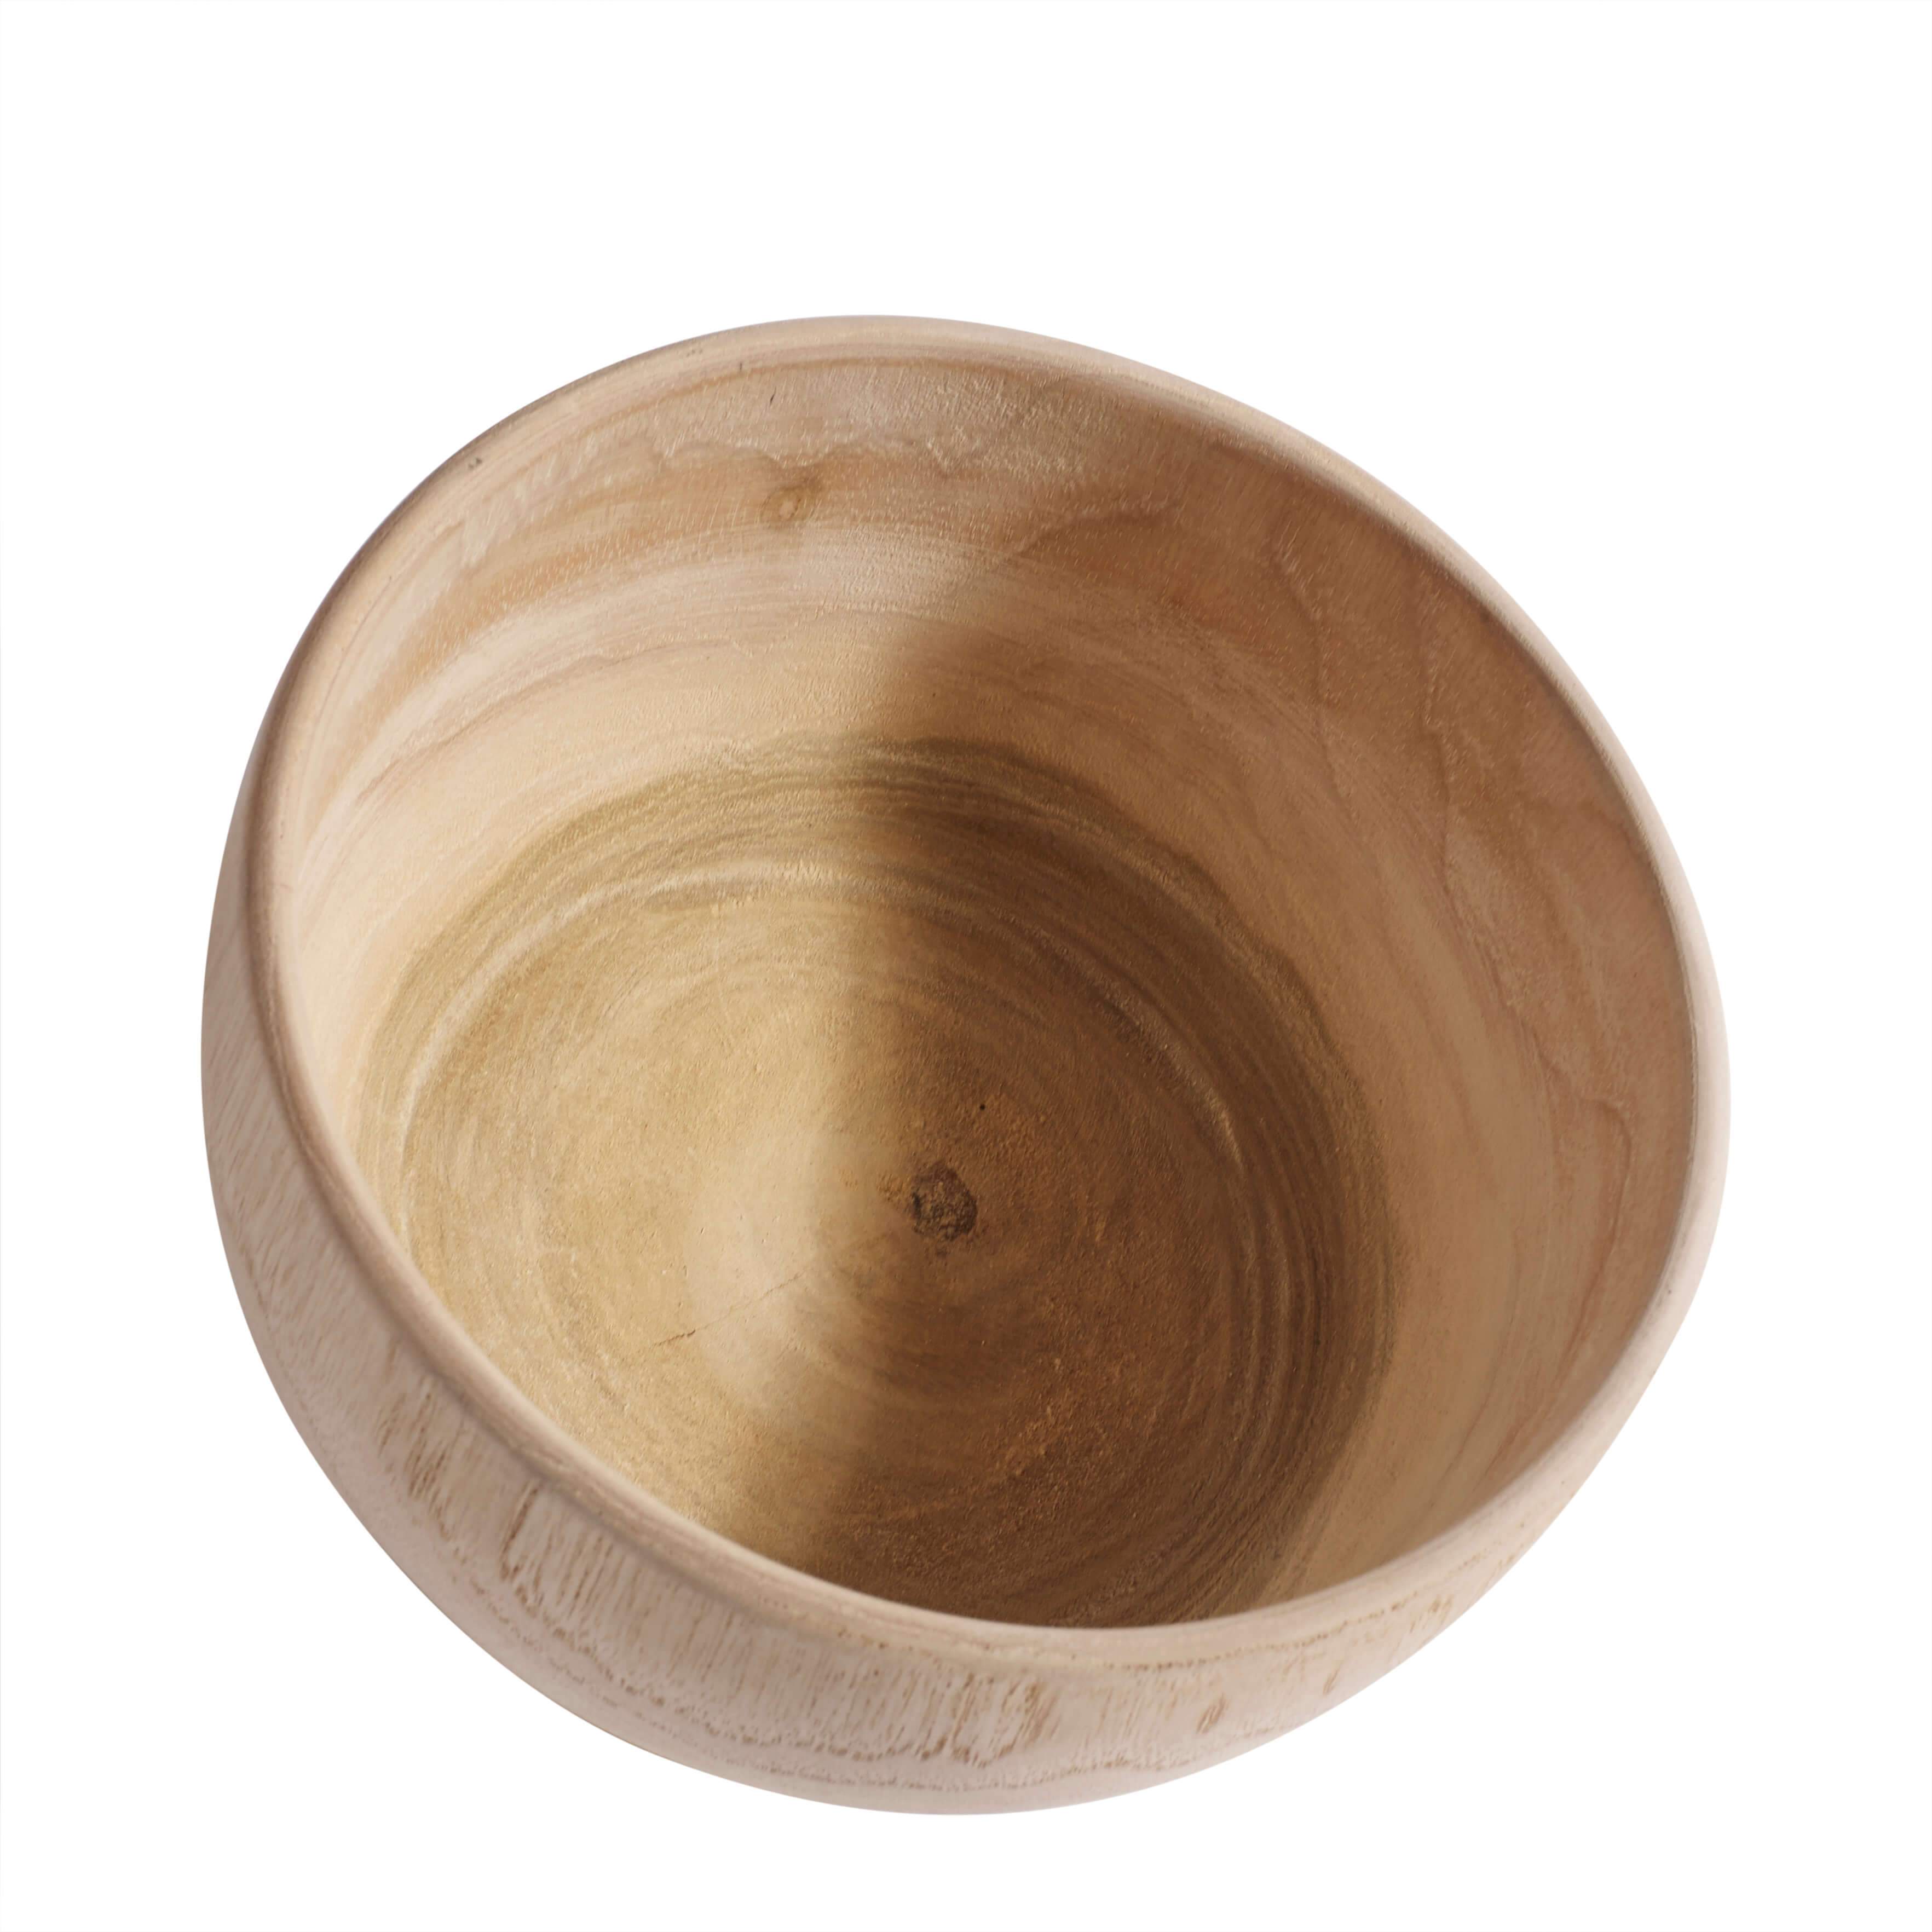 Muubs Muesli Bowl Teak, 15 cm